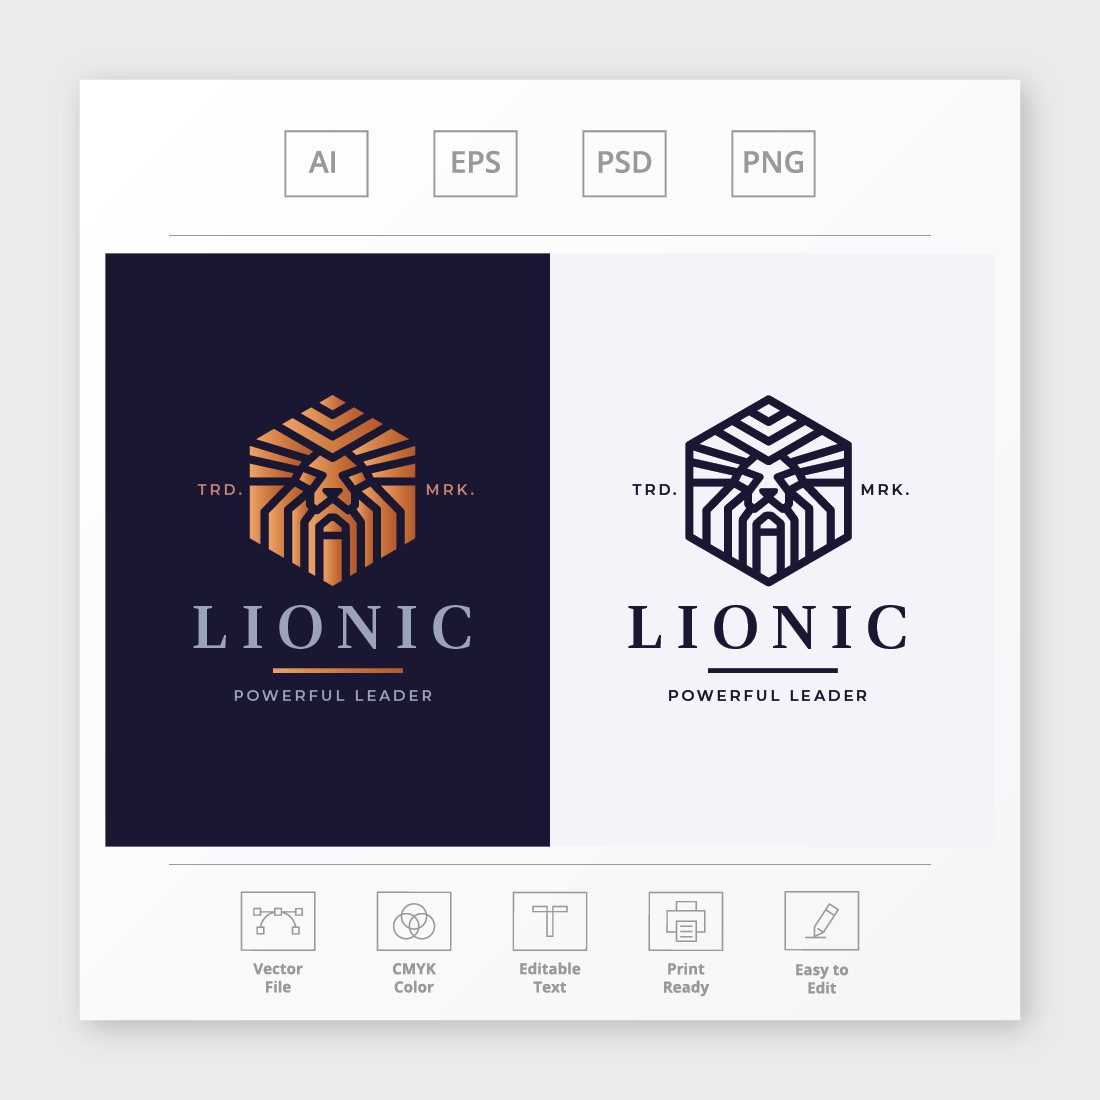 Lionic Lion Head Logo preview image.